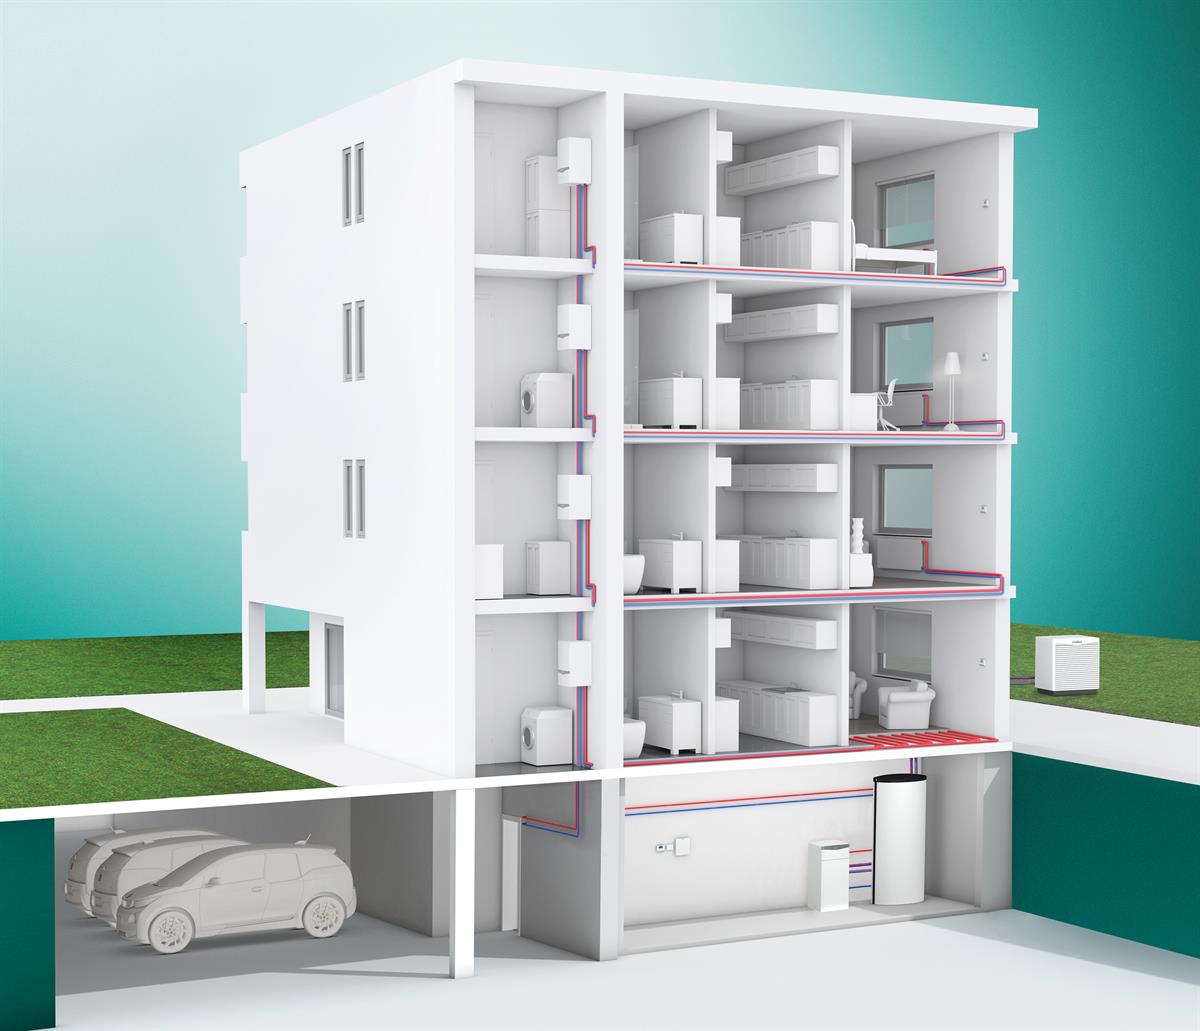 Installationsbeispiel - Die neuen geoTHERM mini werden in den Wohnungen installiert und von der bewährten kompakten Luft-Wärmepumpe im Außenbereich versorgt.